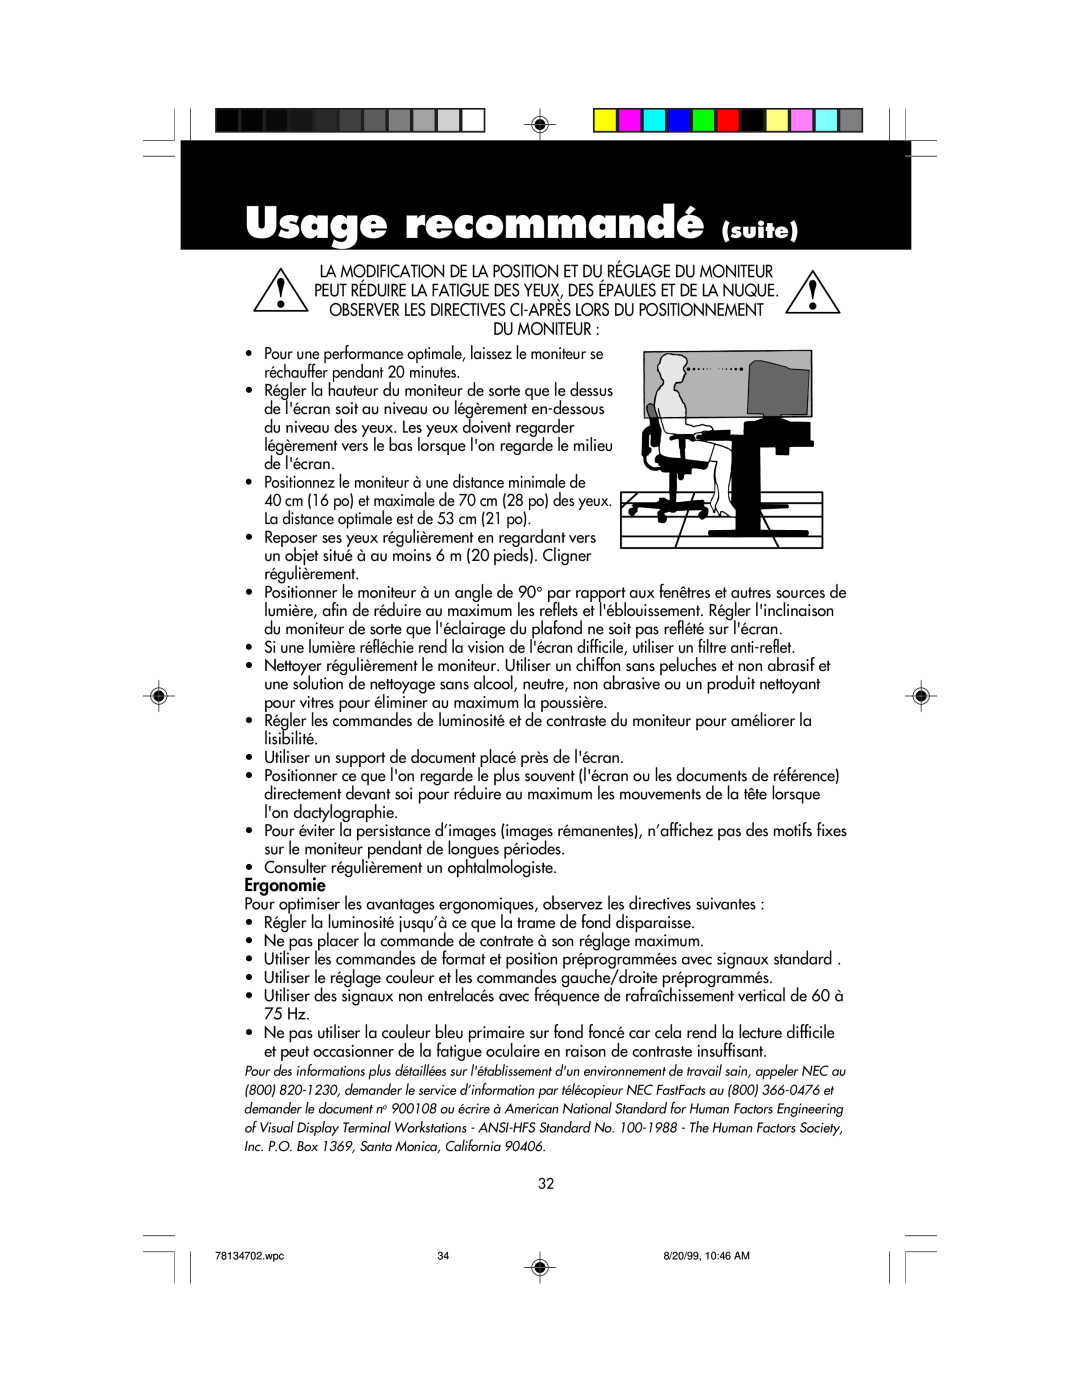 NEC LCD1510+ user manual Usage recommandé suite, Du Moniteur, Ergonomie 